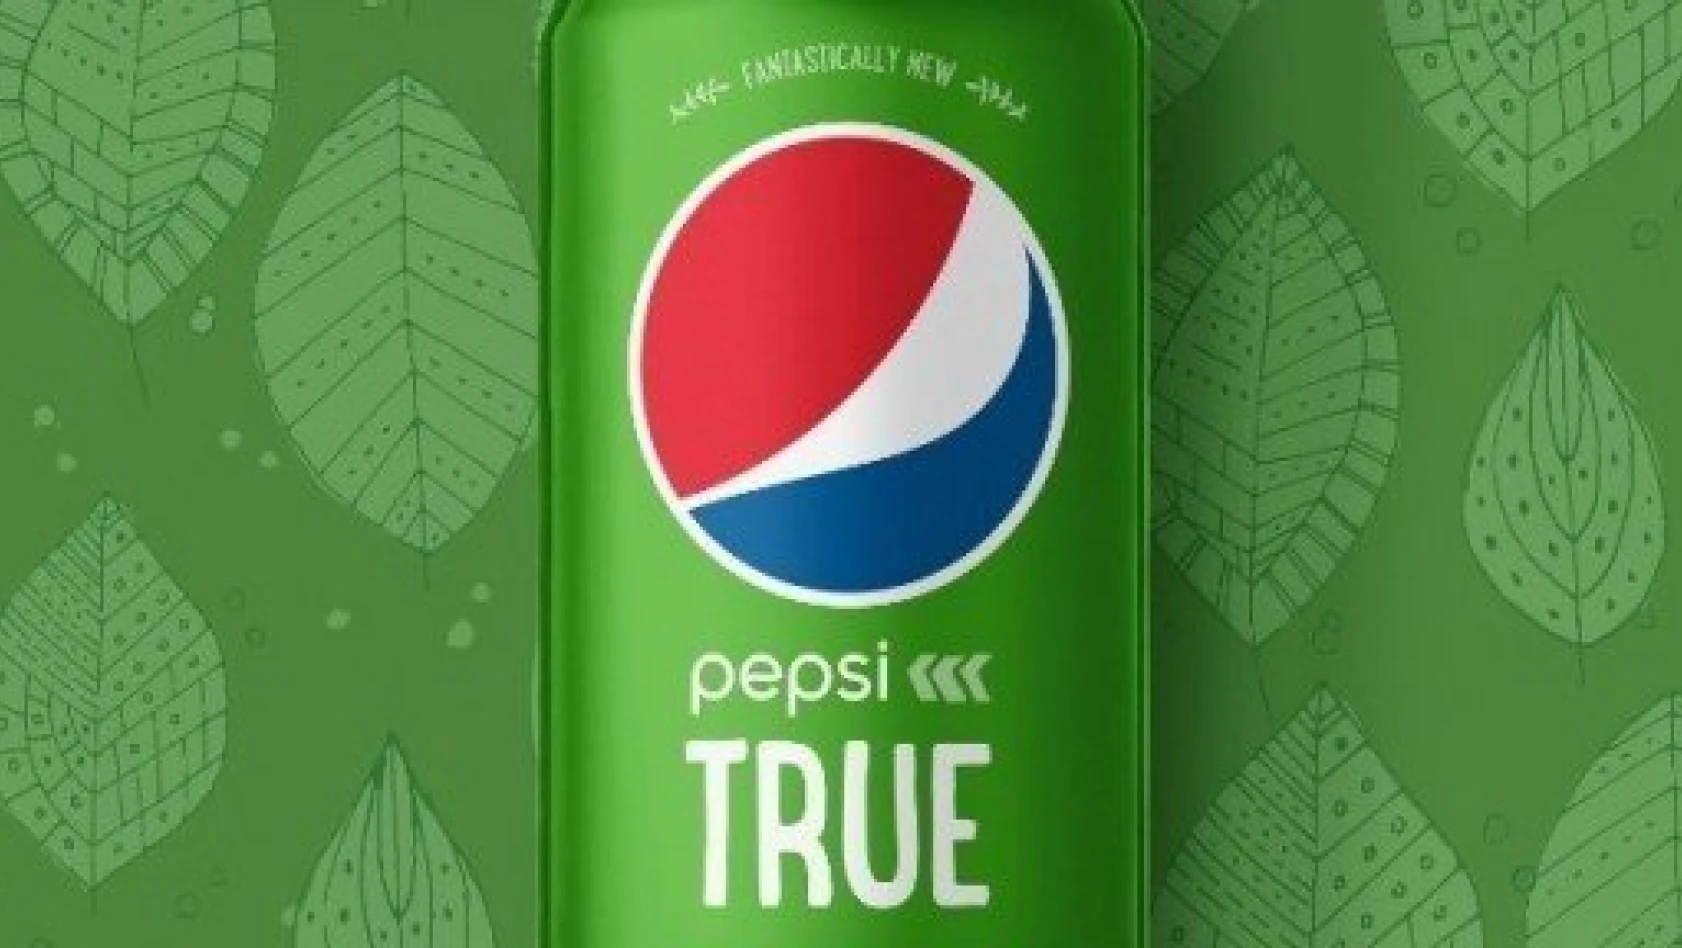 Pepsi, Doğal Tatlandırılmış Kolası True'yi Tanıttı